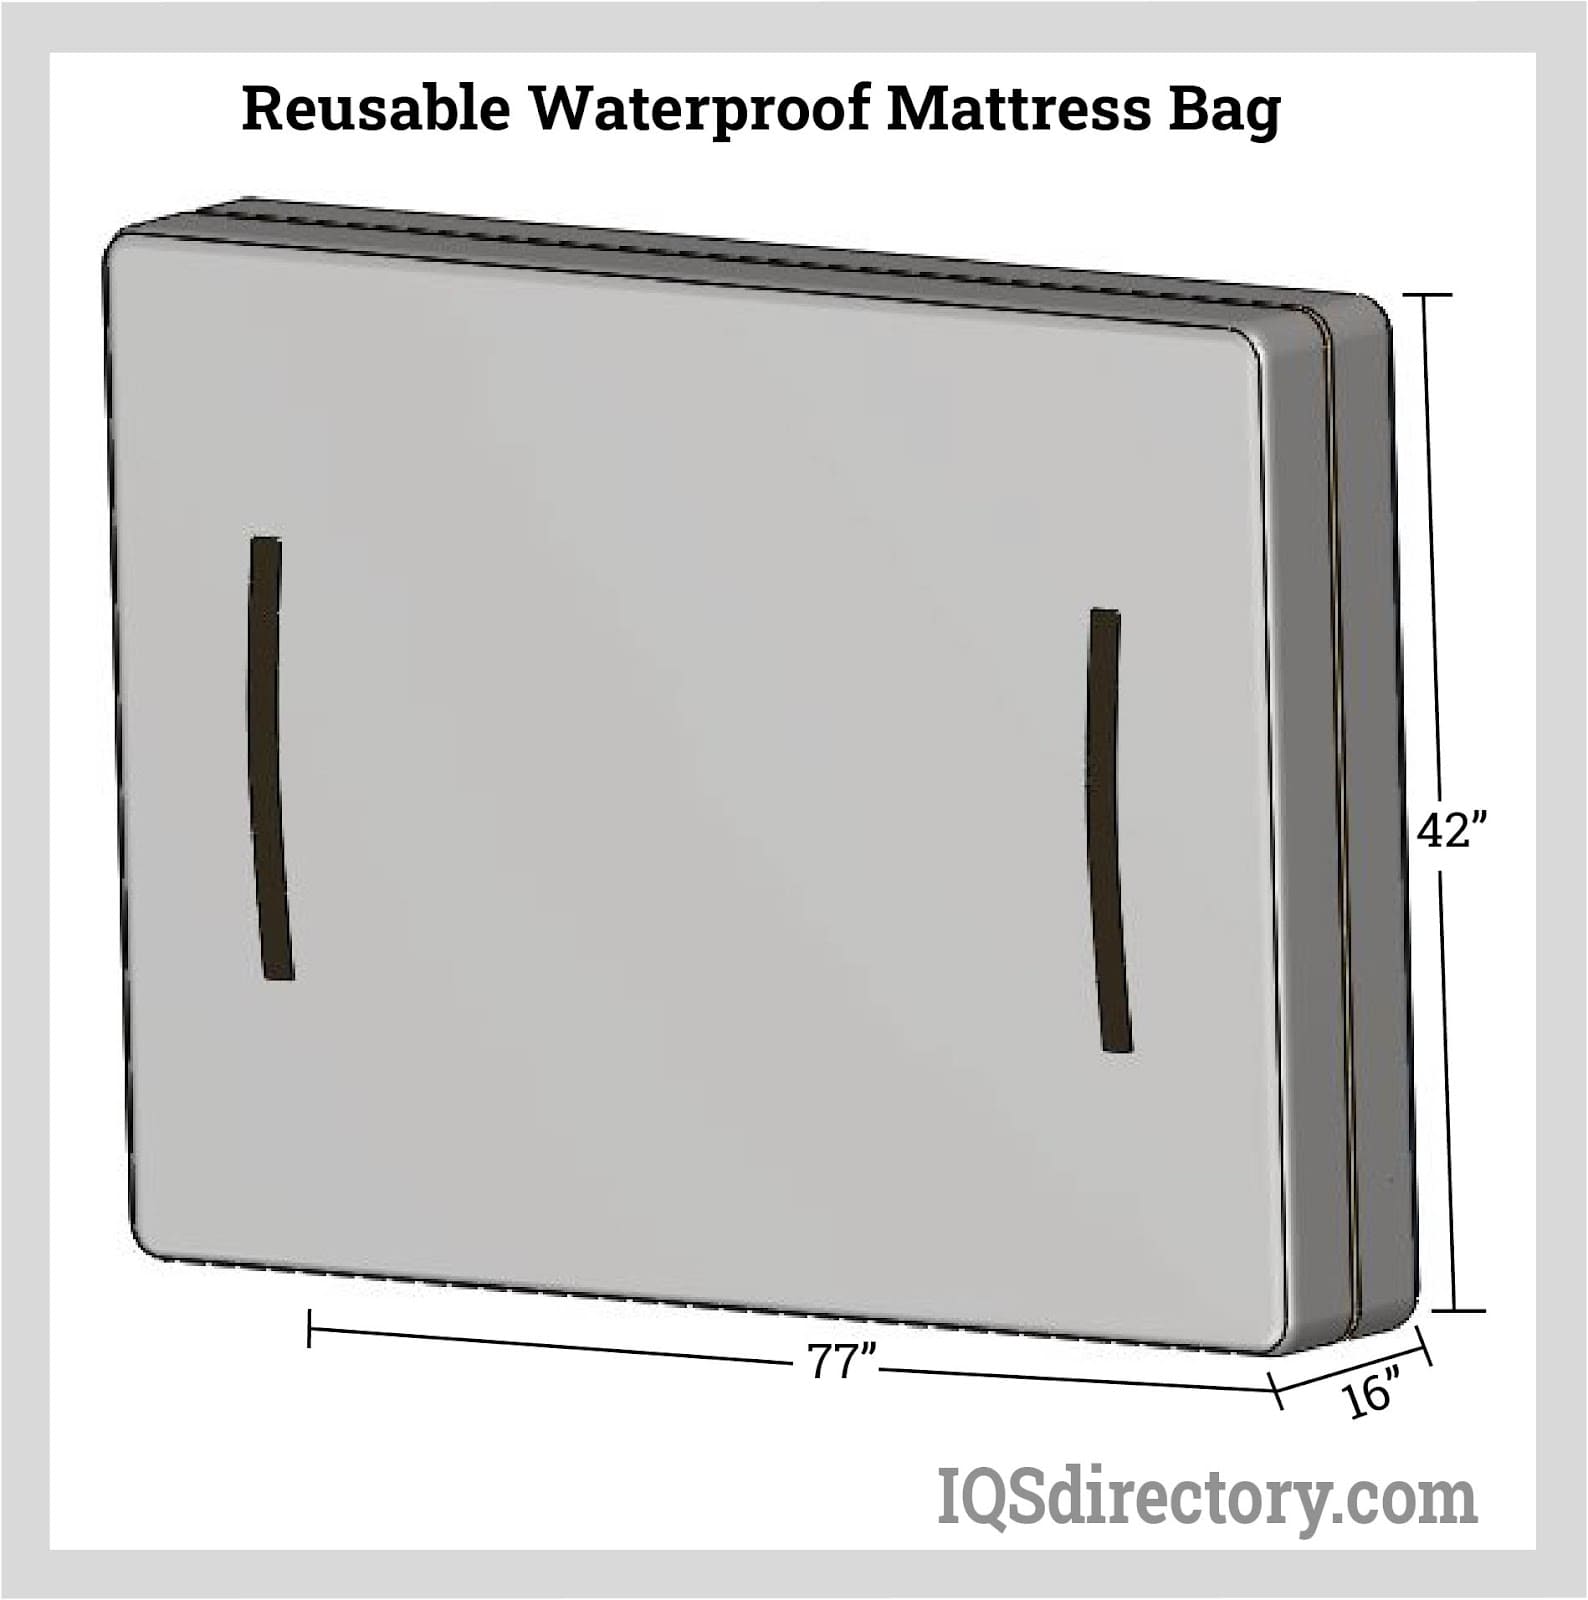 Reusable Waterproof Mattress Bag